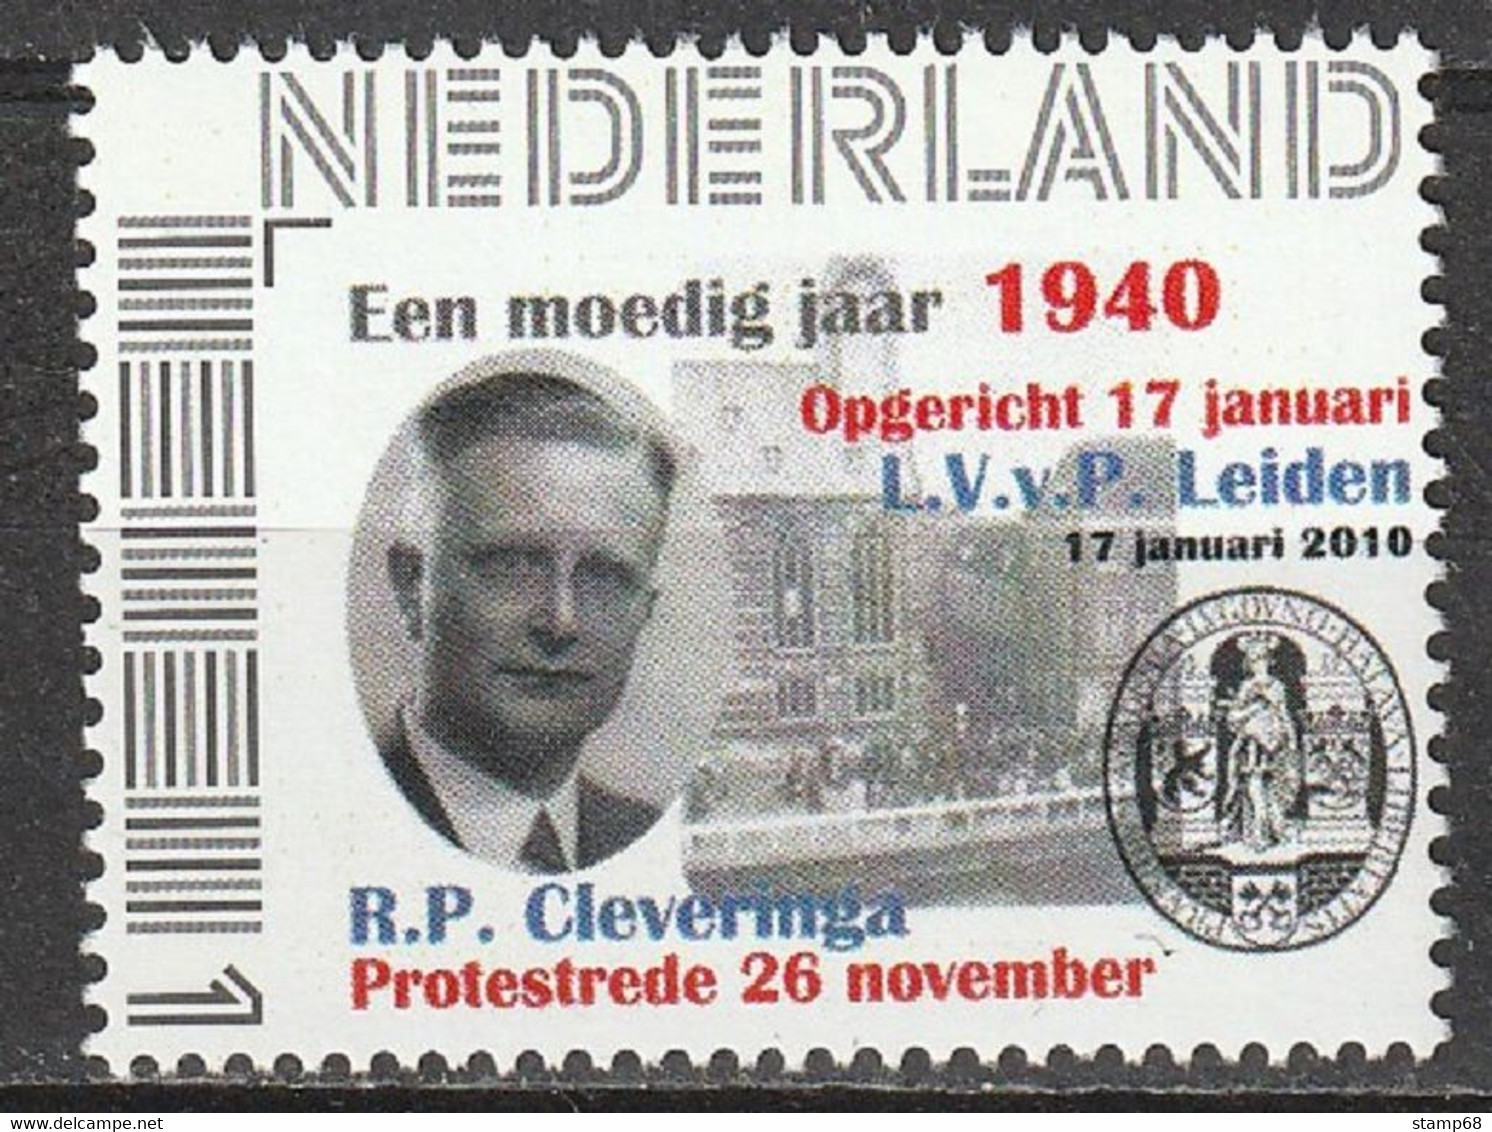 Nederland NVPH 2751 Persoonlijke Zegels Protestrede Cleveringa Oprichting LvVP Leiden 1940-2010 MNH Postfris - Persoonlijke Postzegels